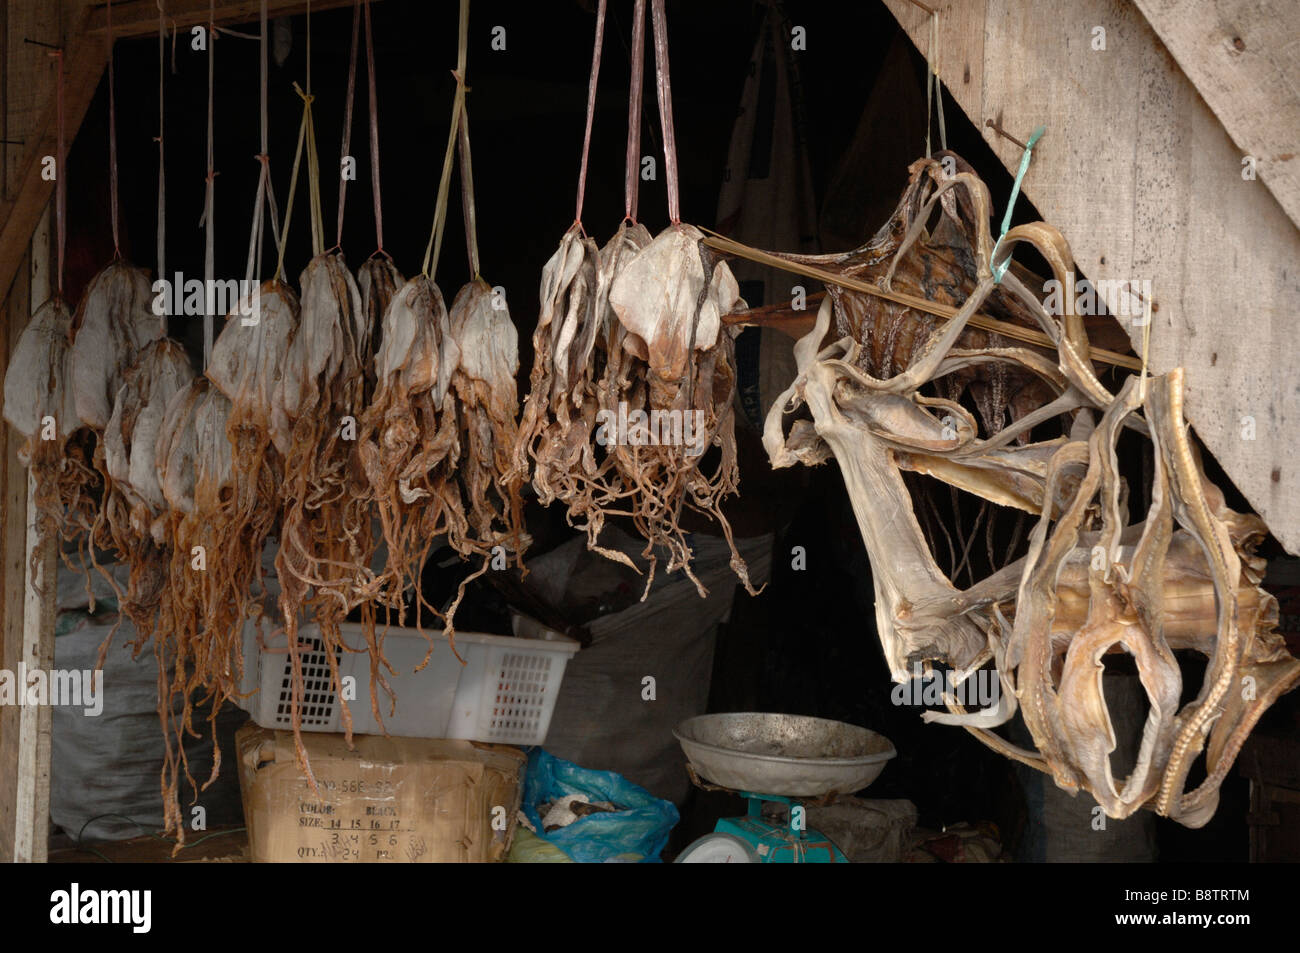 Pesci secchi in stallo Semporna Sabah Borneo malese del sud-est asiatico Foto Stock